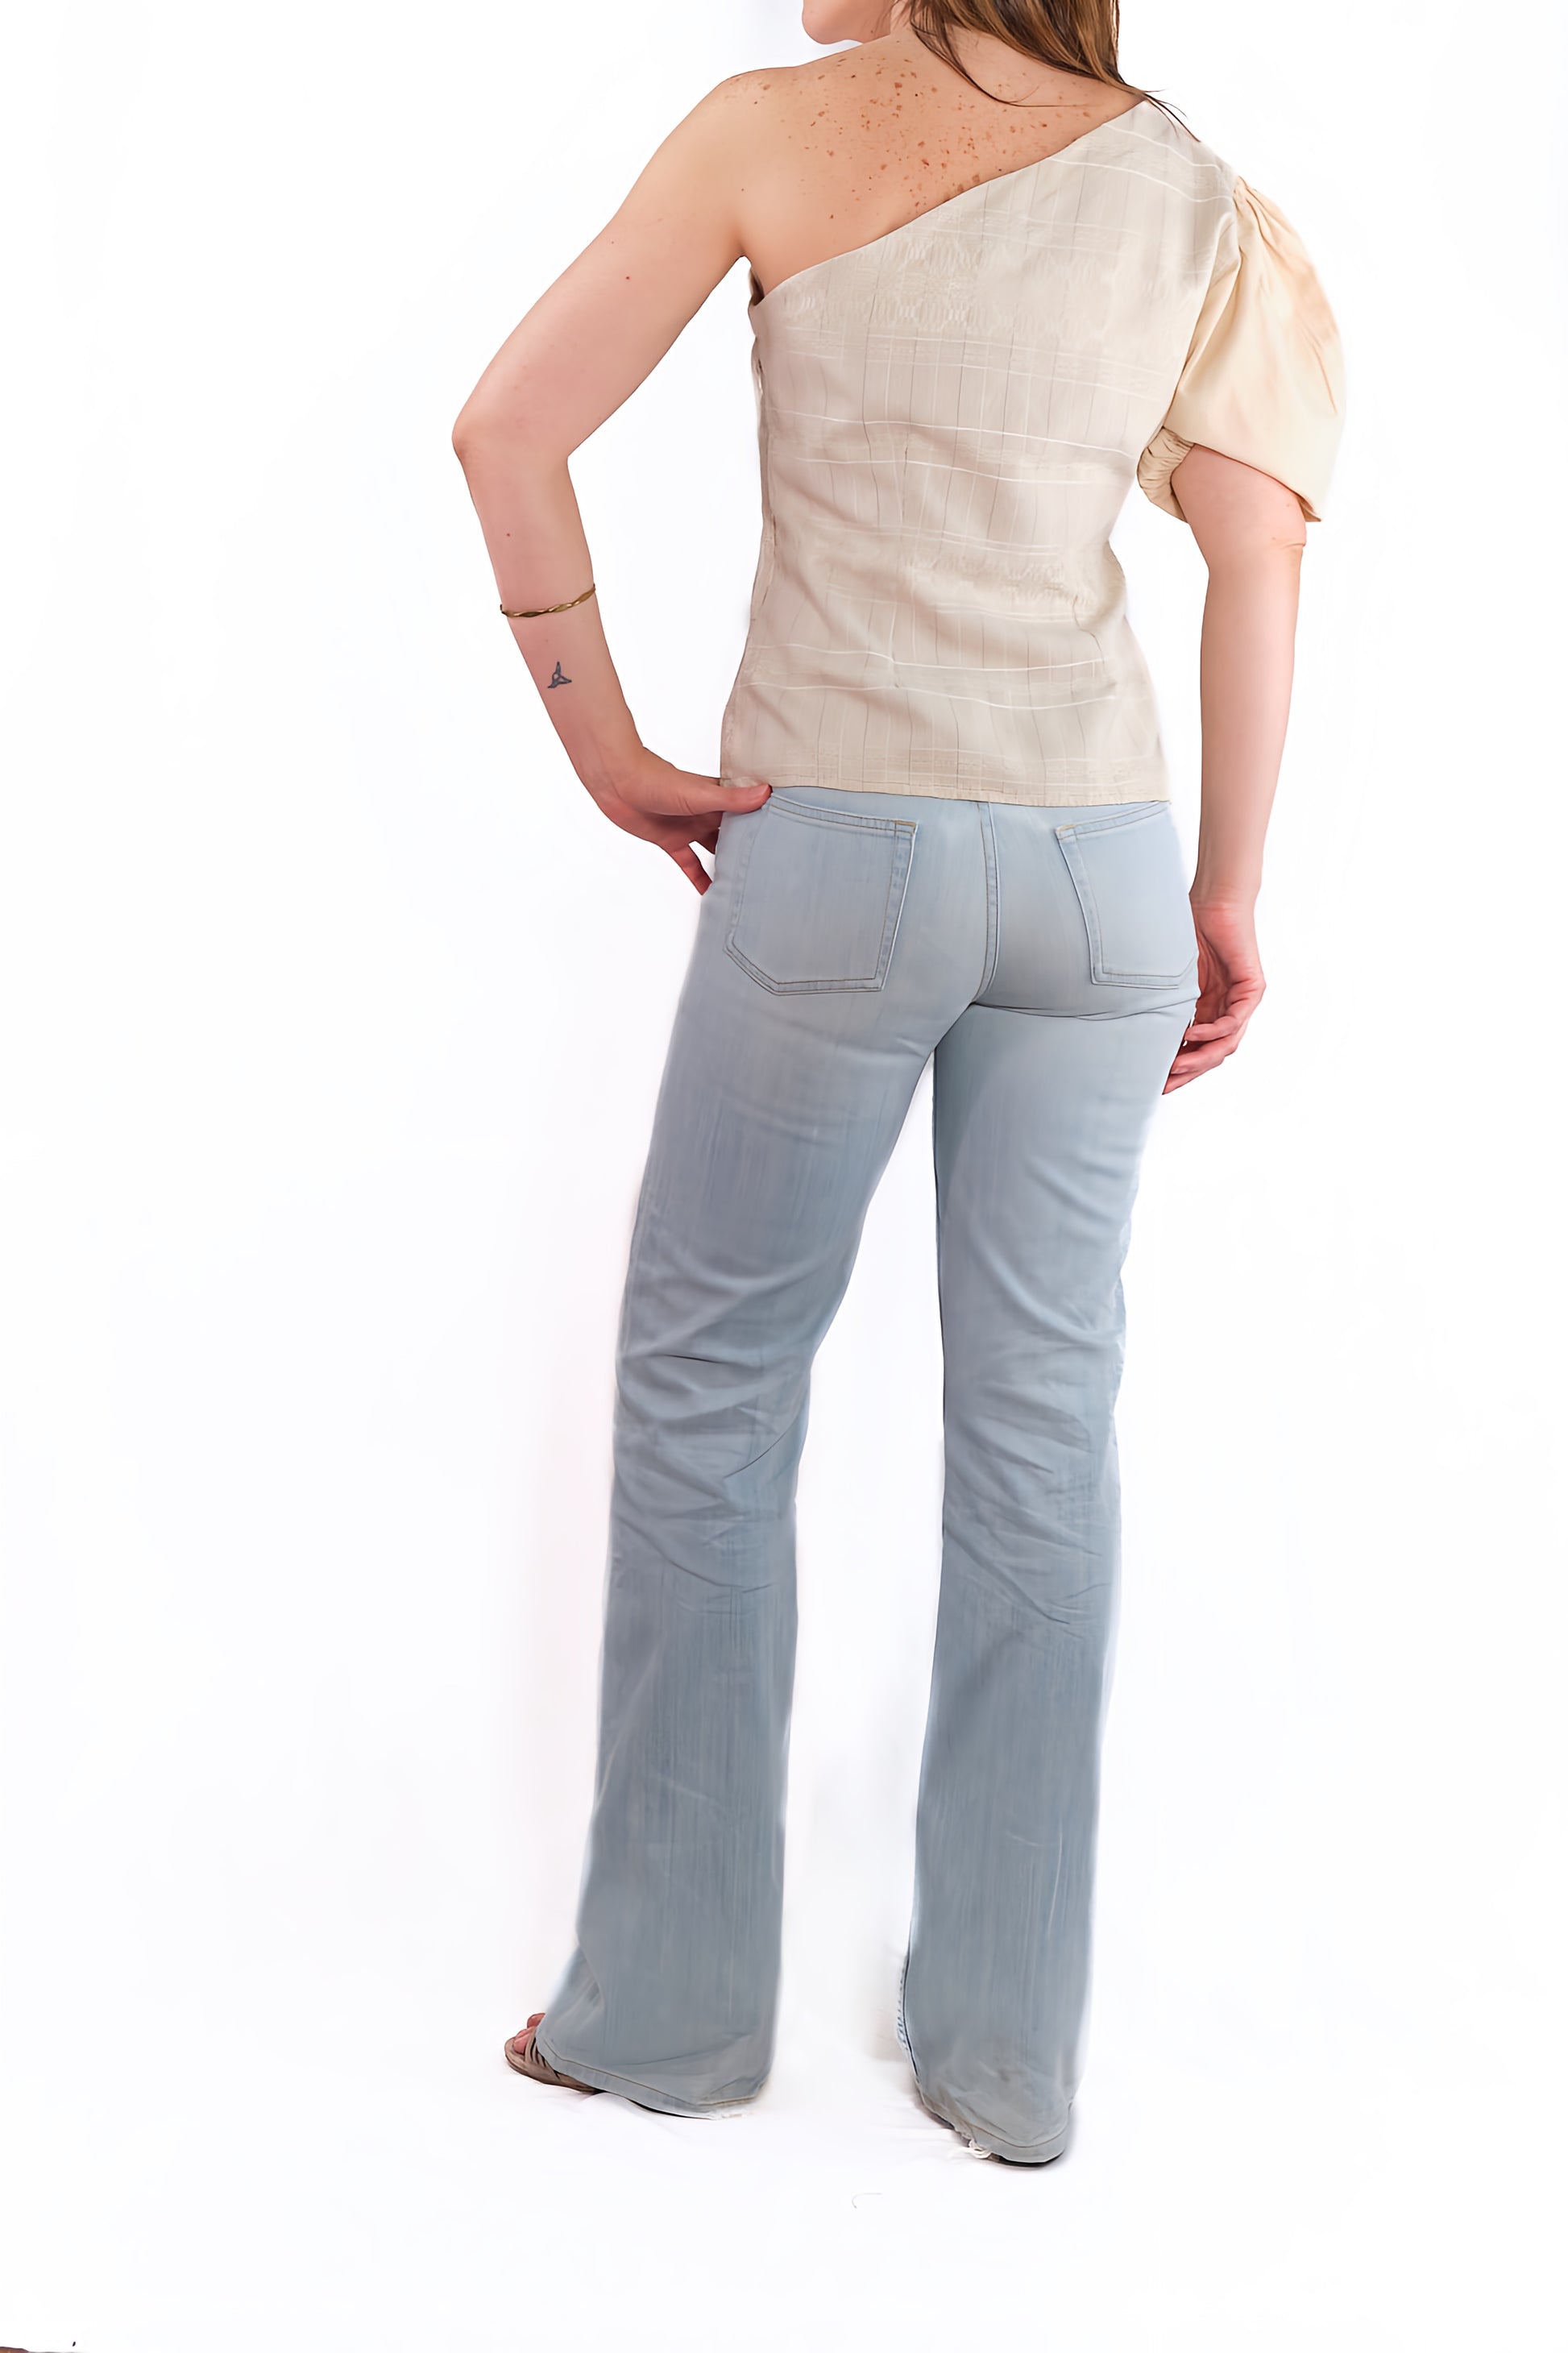 Mitla blouse ecru with bare shoulder back